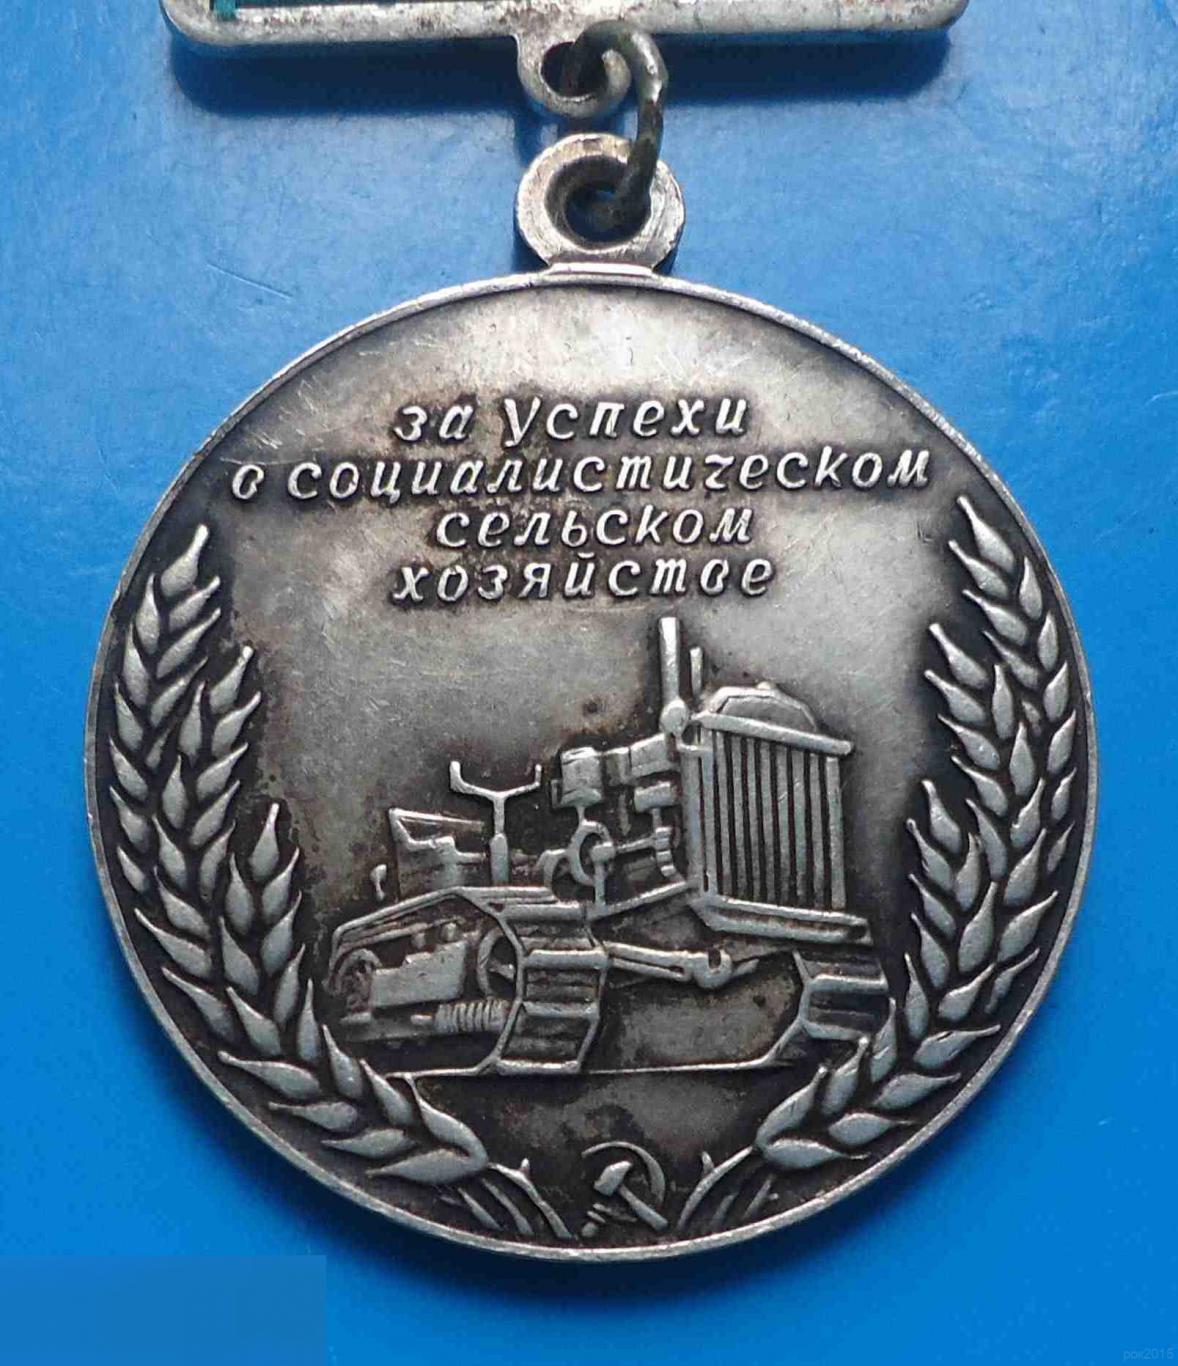 Большая серебряная медаль ВСХВ За успехи в социалистическом сельском хозяйстве 2 4